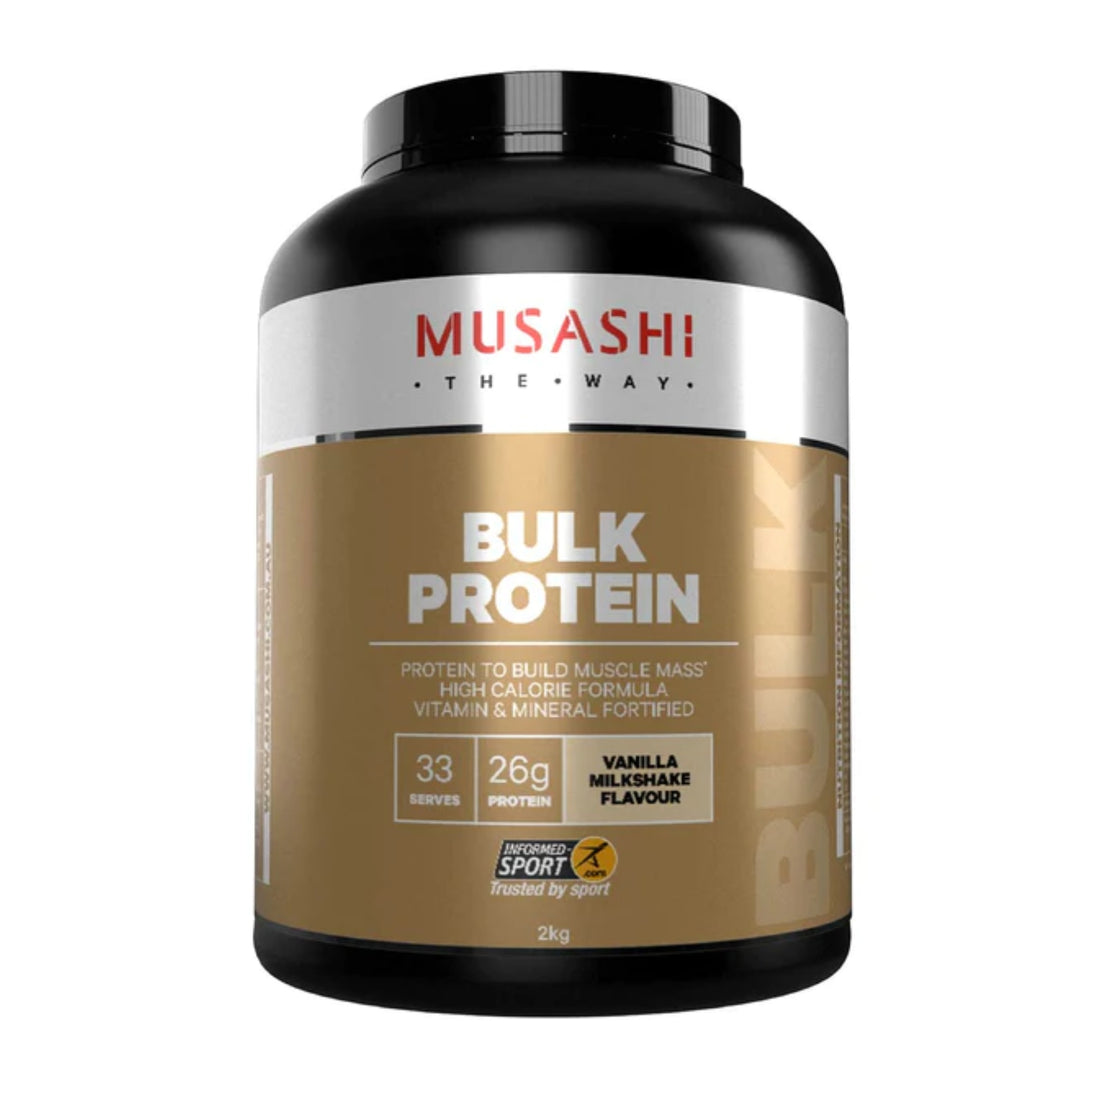 Musashi Bulk Protein Protein Powder Mass Gainer